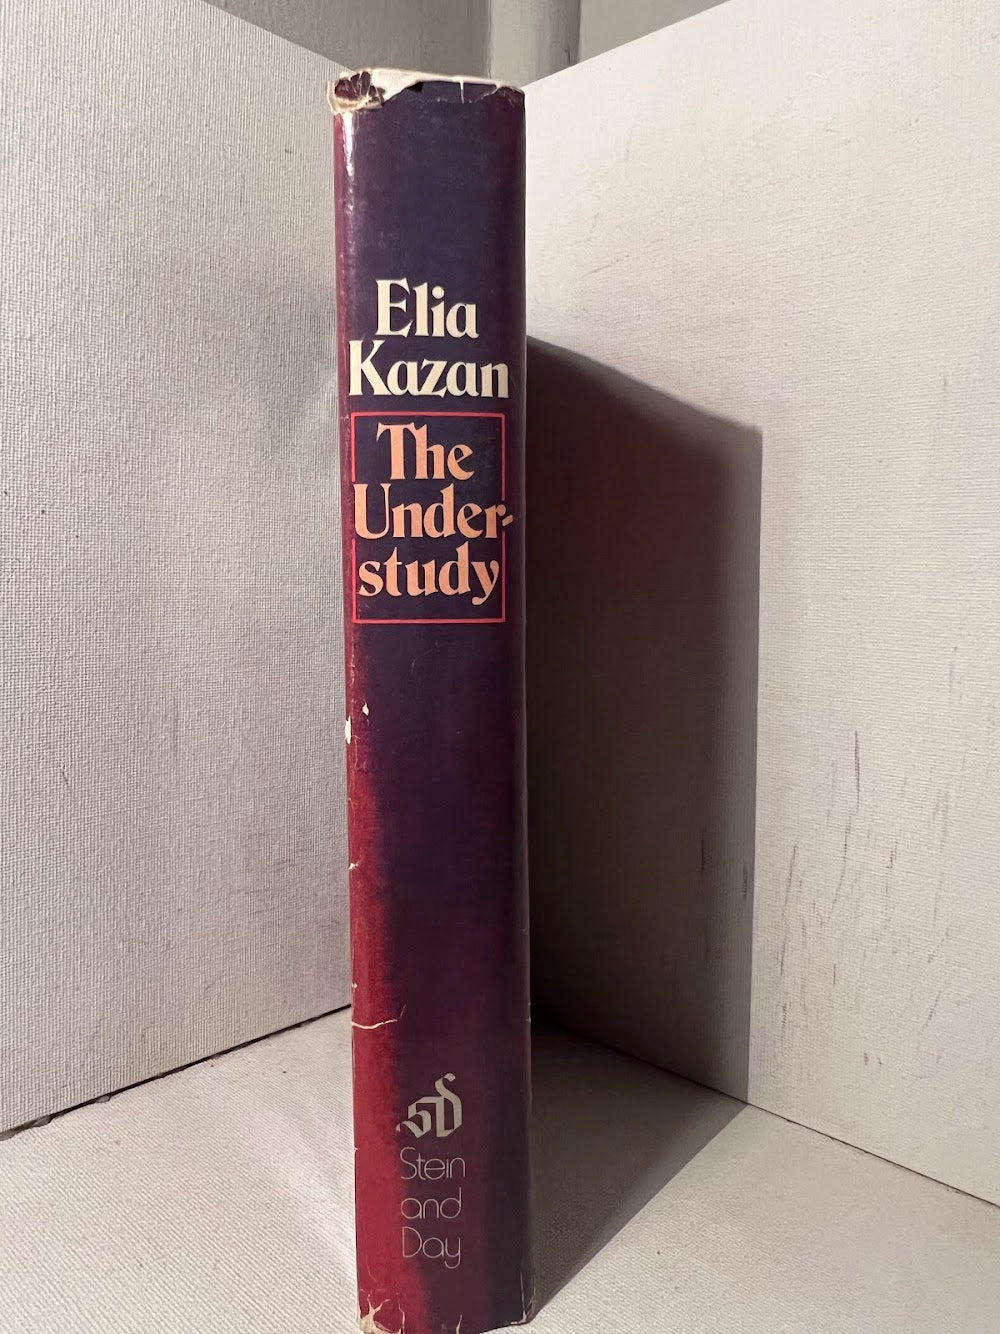 The Understudy by Elia Kazan